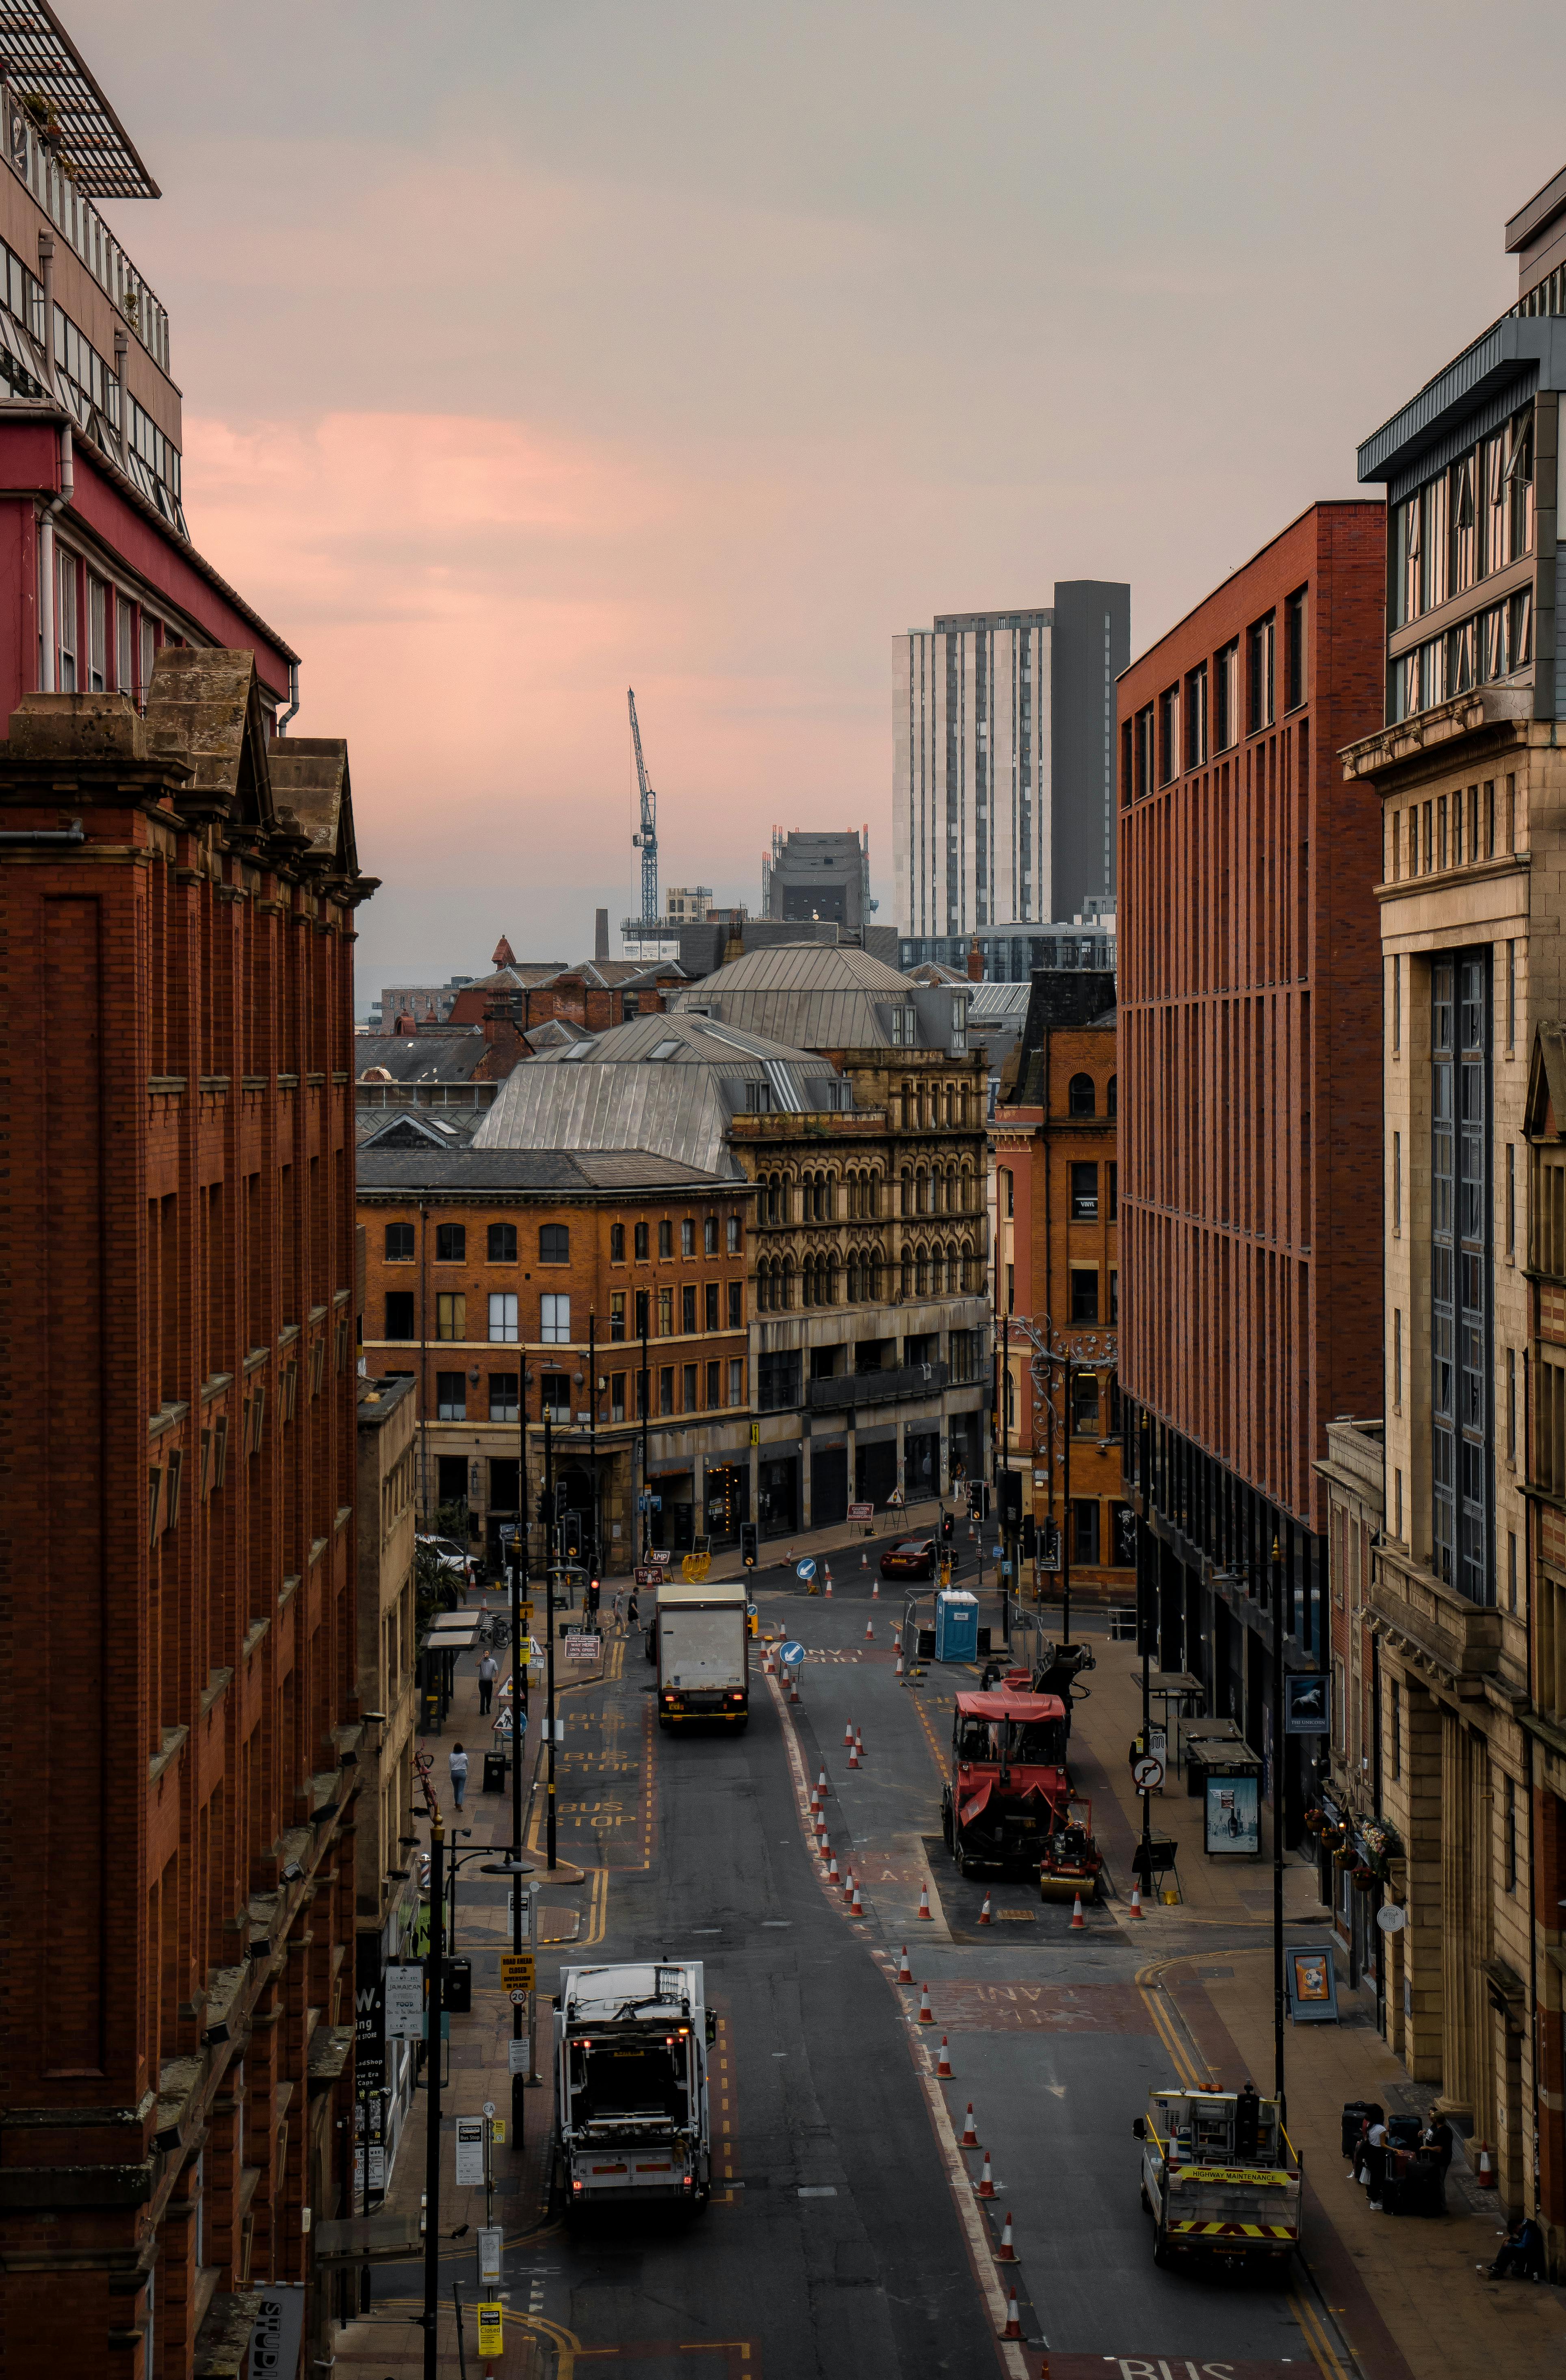 + ảnh đẹp nhất về Thành Phố Manchester · Tải xuống miễn phí 100% ·  Ảnh có sẵn của Pexels